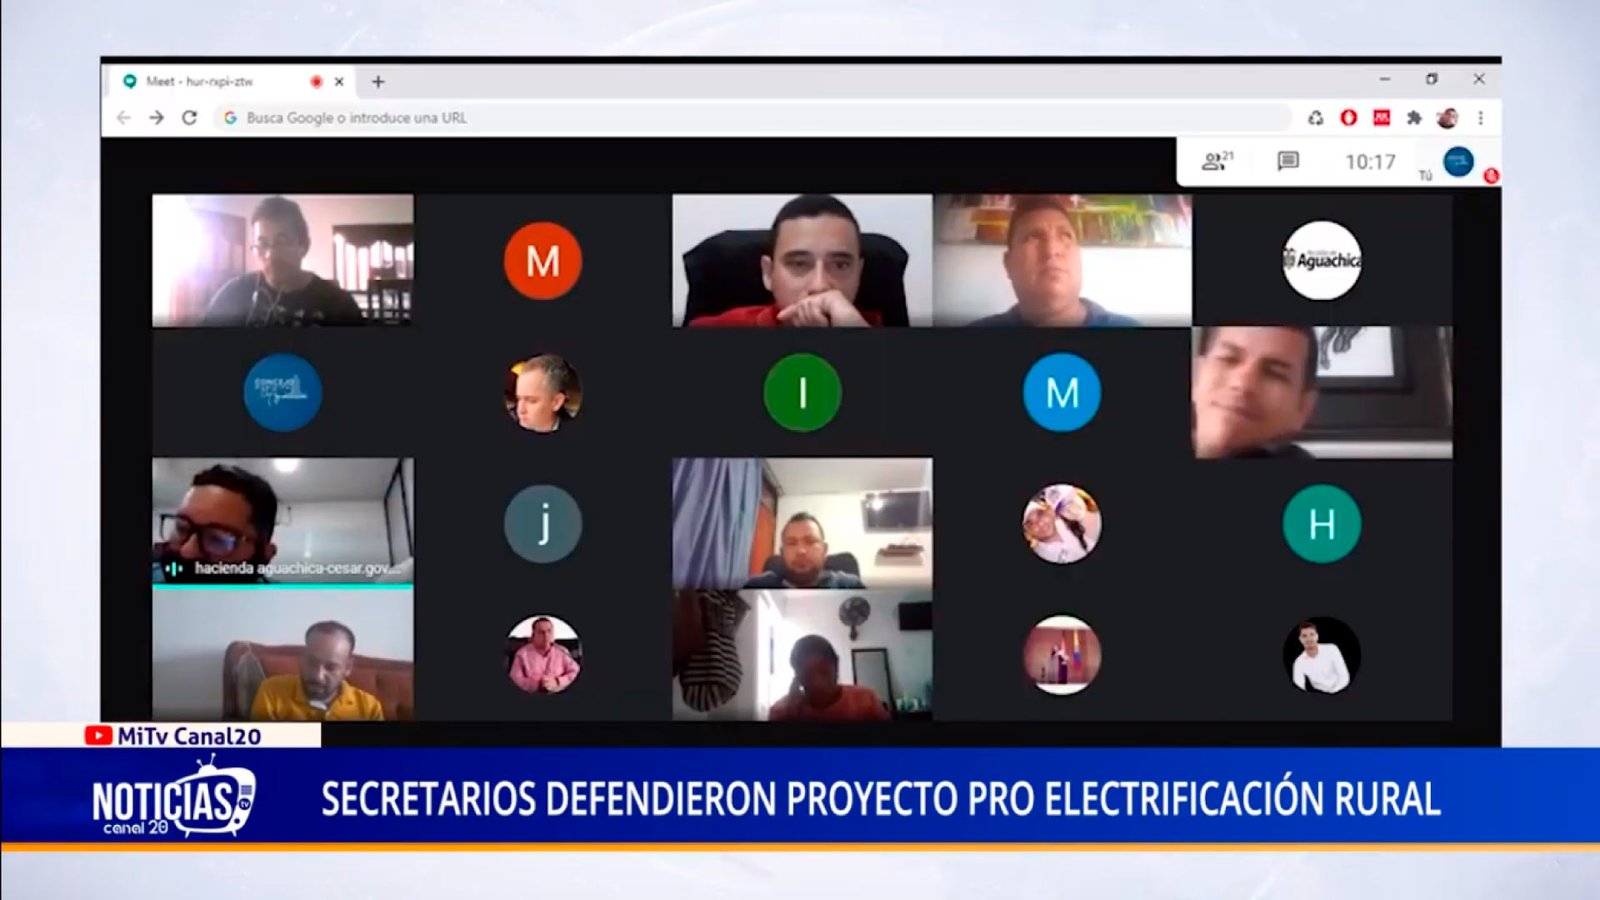 SECRETARIOS DEFENDIERON PROYECTO PRO ELECTRIFICACIÓN RURAL